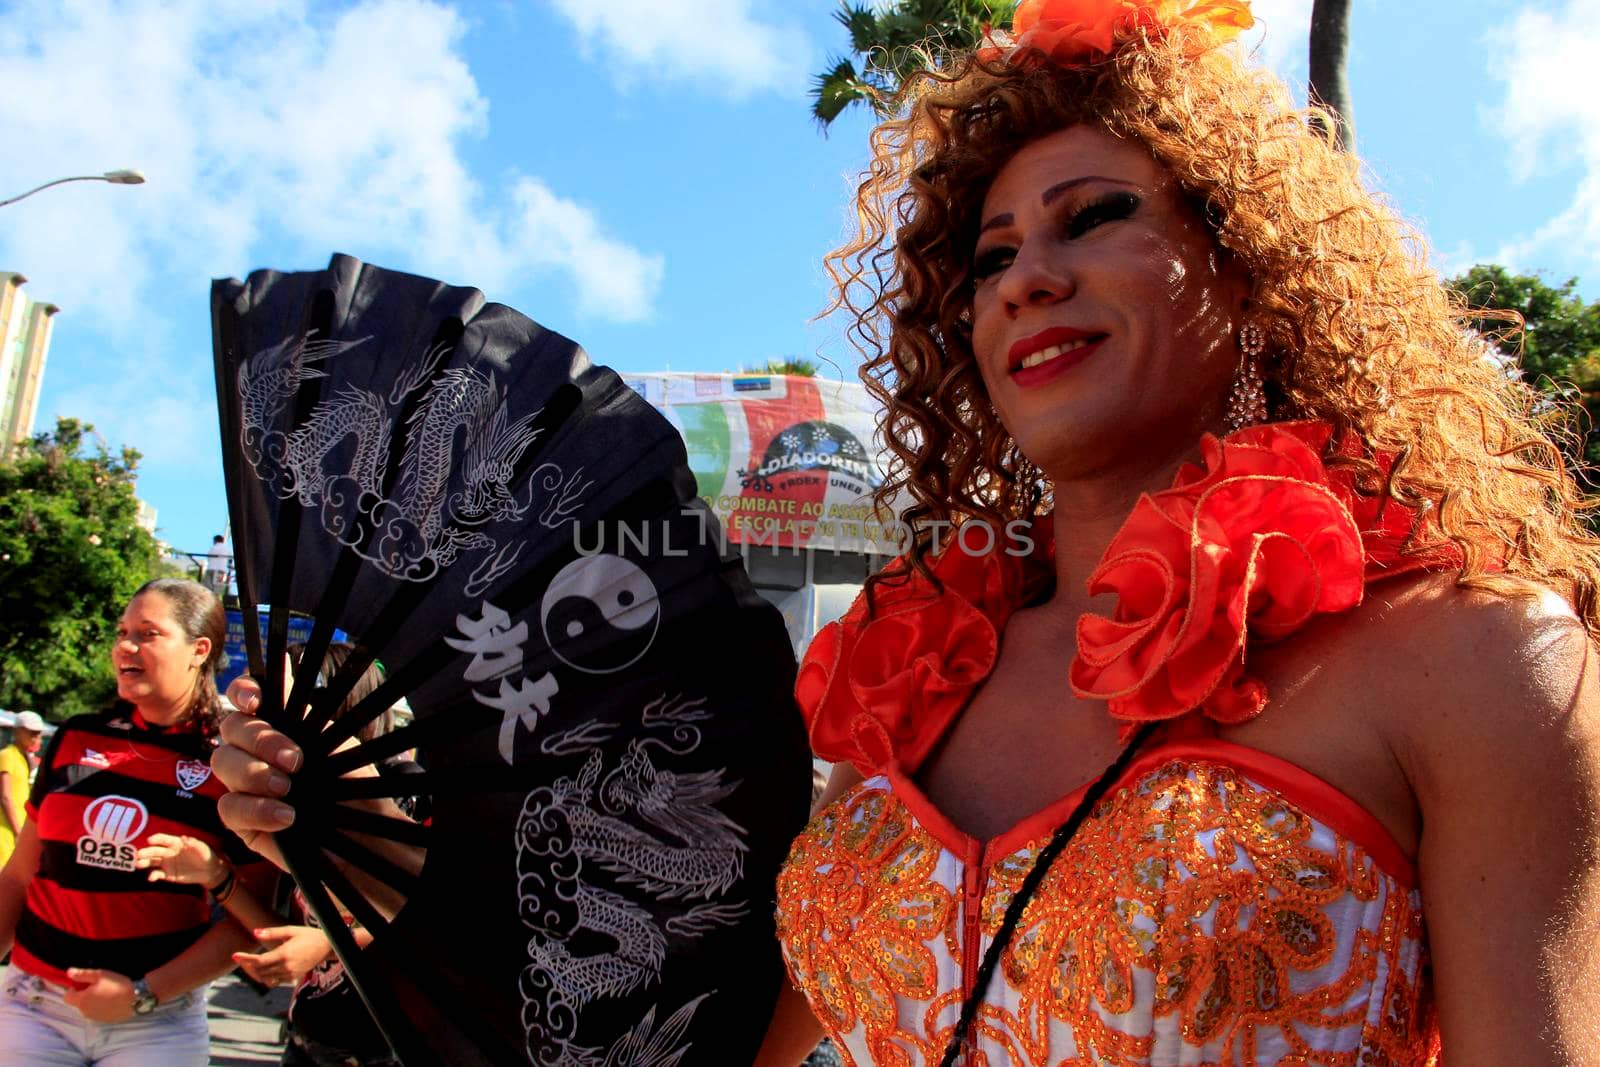 gay pride parade in salvador by joasouza